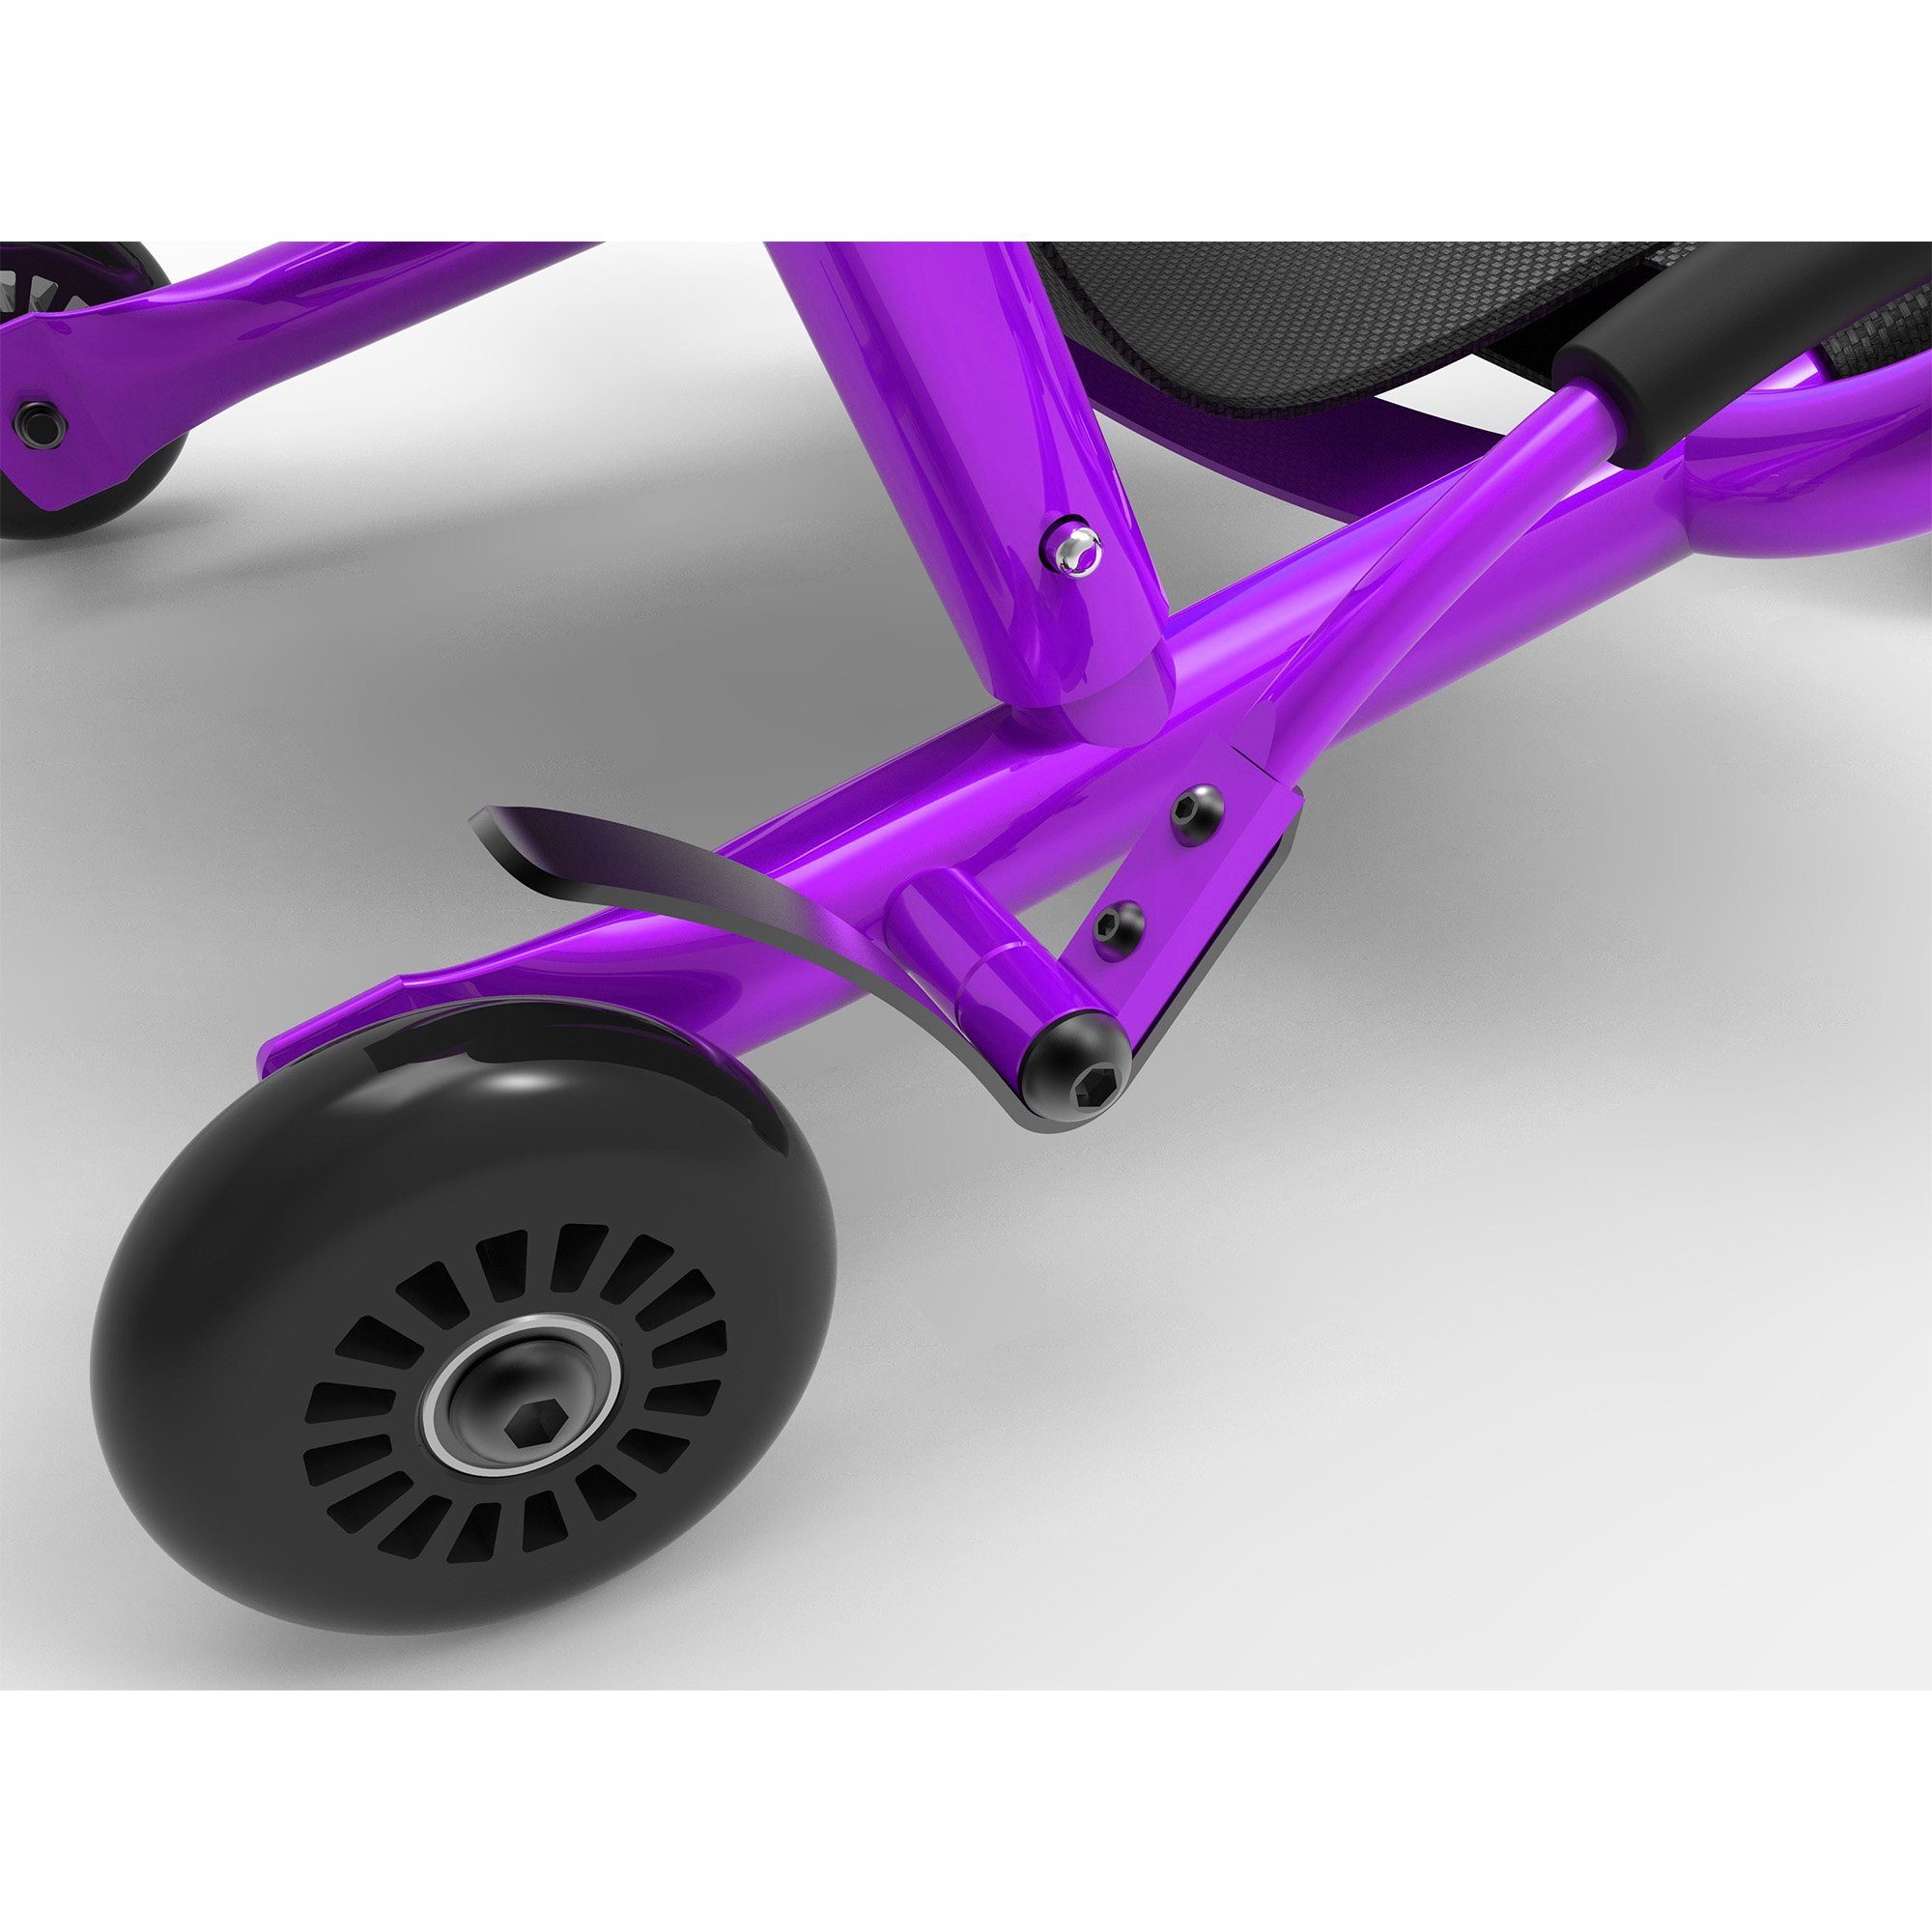 für EzyRoller Dreiradscooter 2 Mini, Jahre - Kleinkinder 4 lila Kinderfahrzeug Dreirad Bewegungsspielzeug